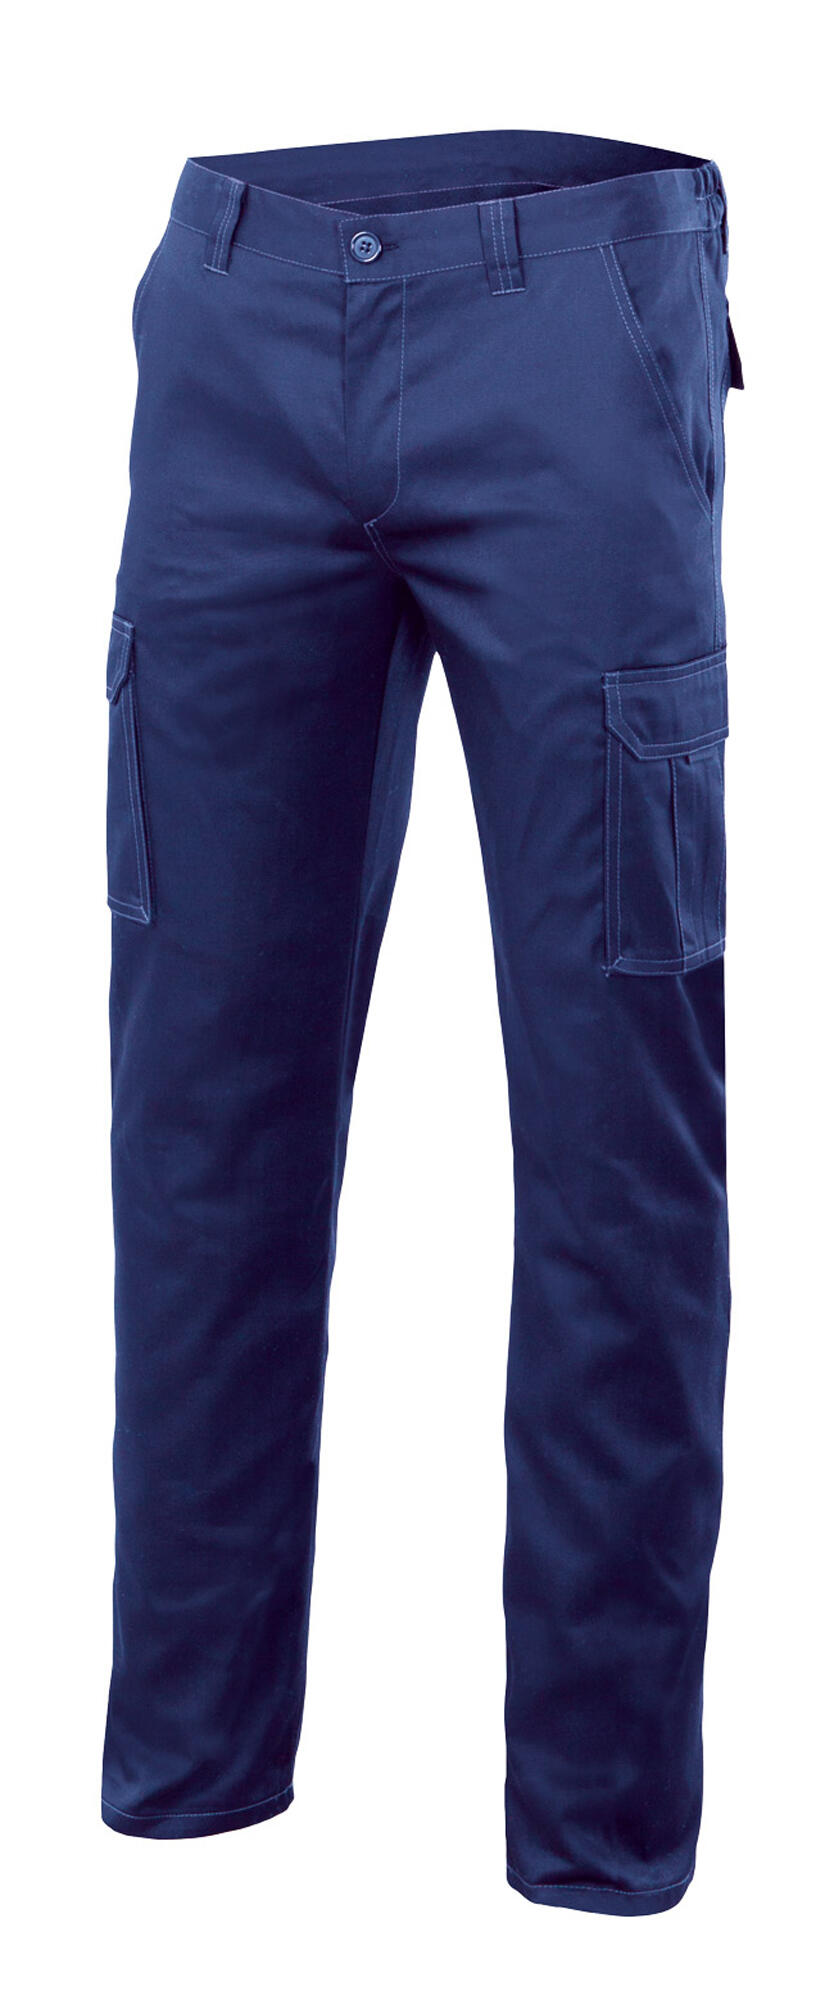 Pantalon de trabajo multibolsillo stretch azulina t34